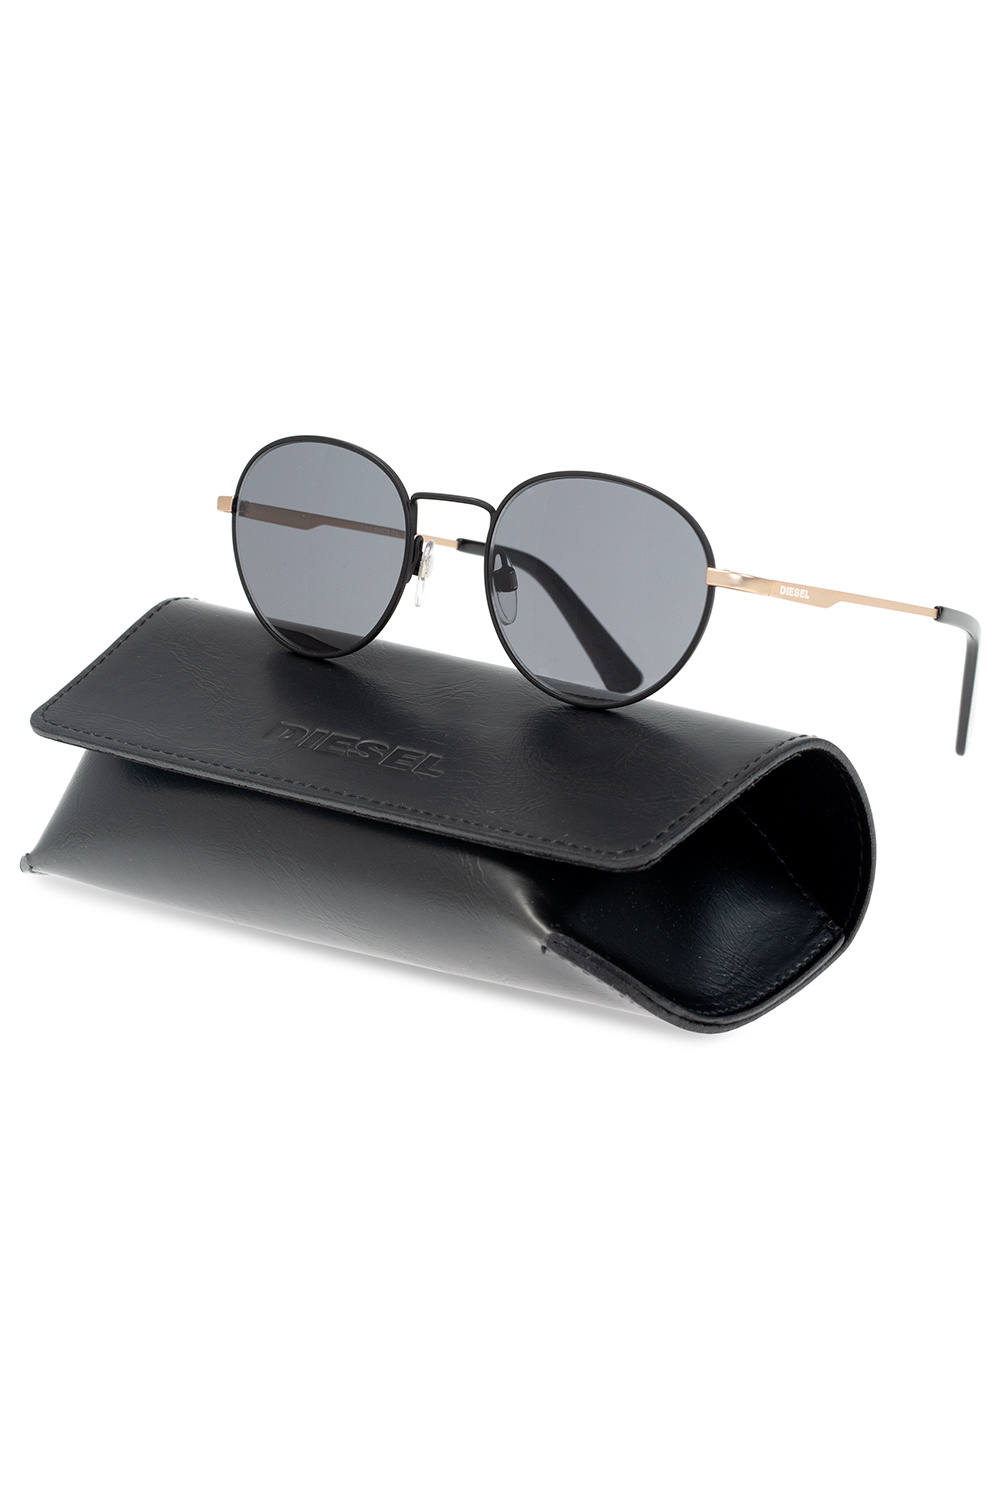 Diesel ‘DL0290’ sunglasses